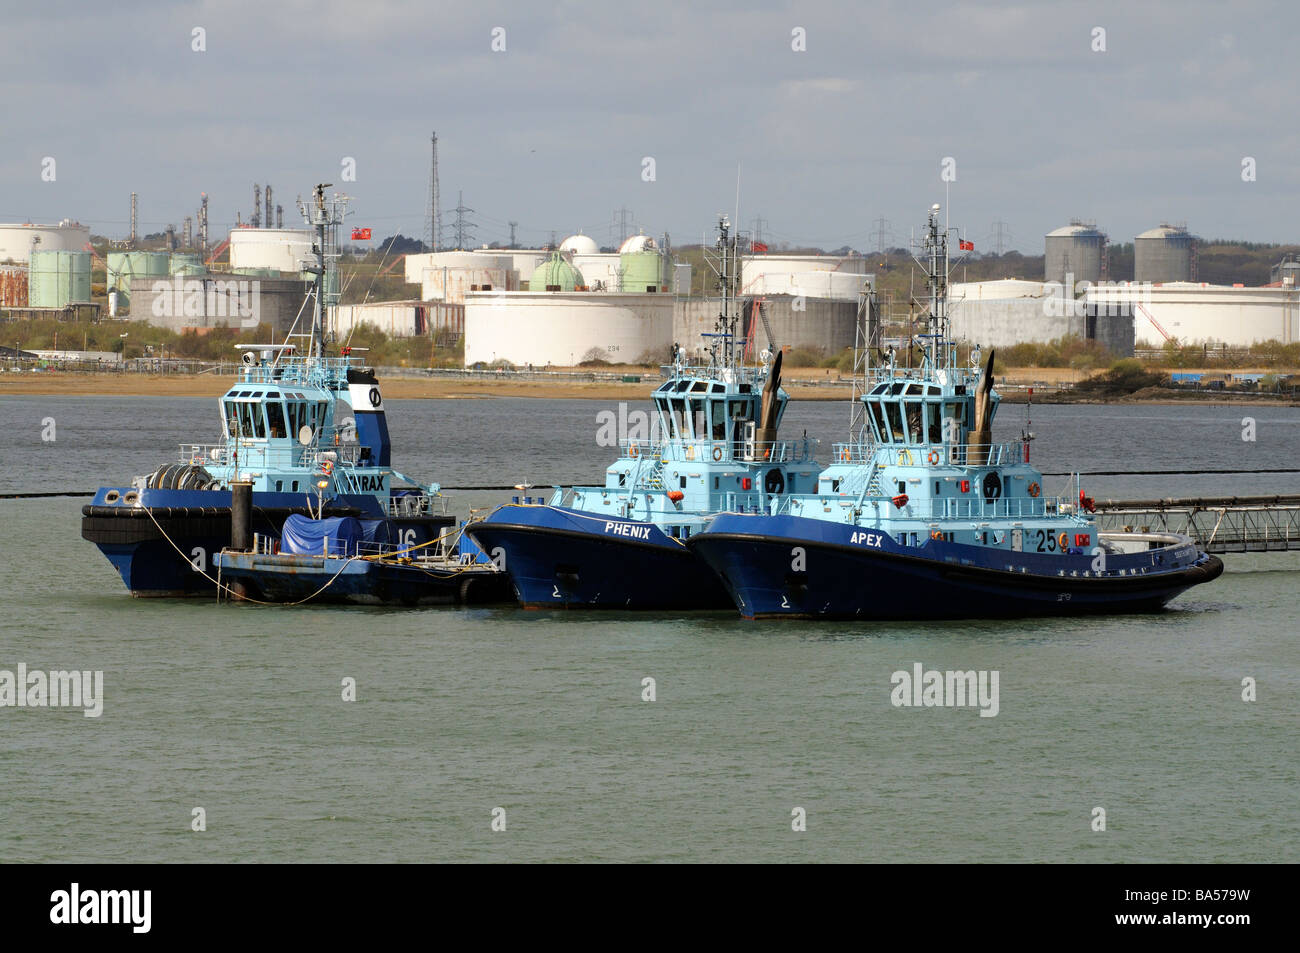 Drei Ozean gehen Schlepper am Southampton Water mit einem Hintergrund von Fawley Raffinerie Lagertanks Stockfoto